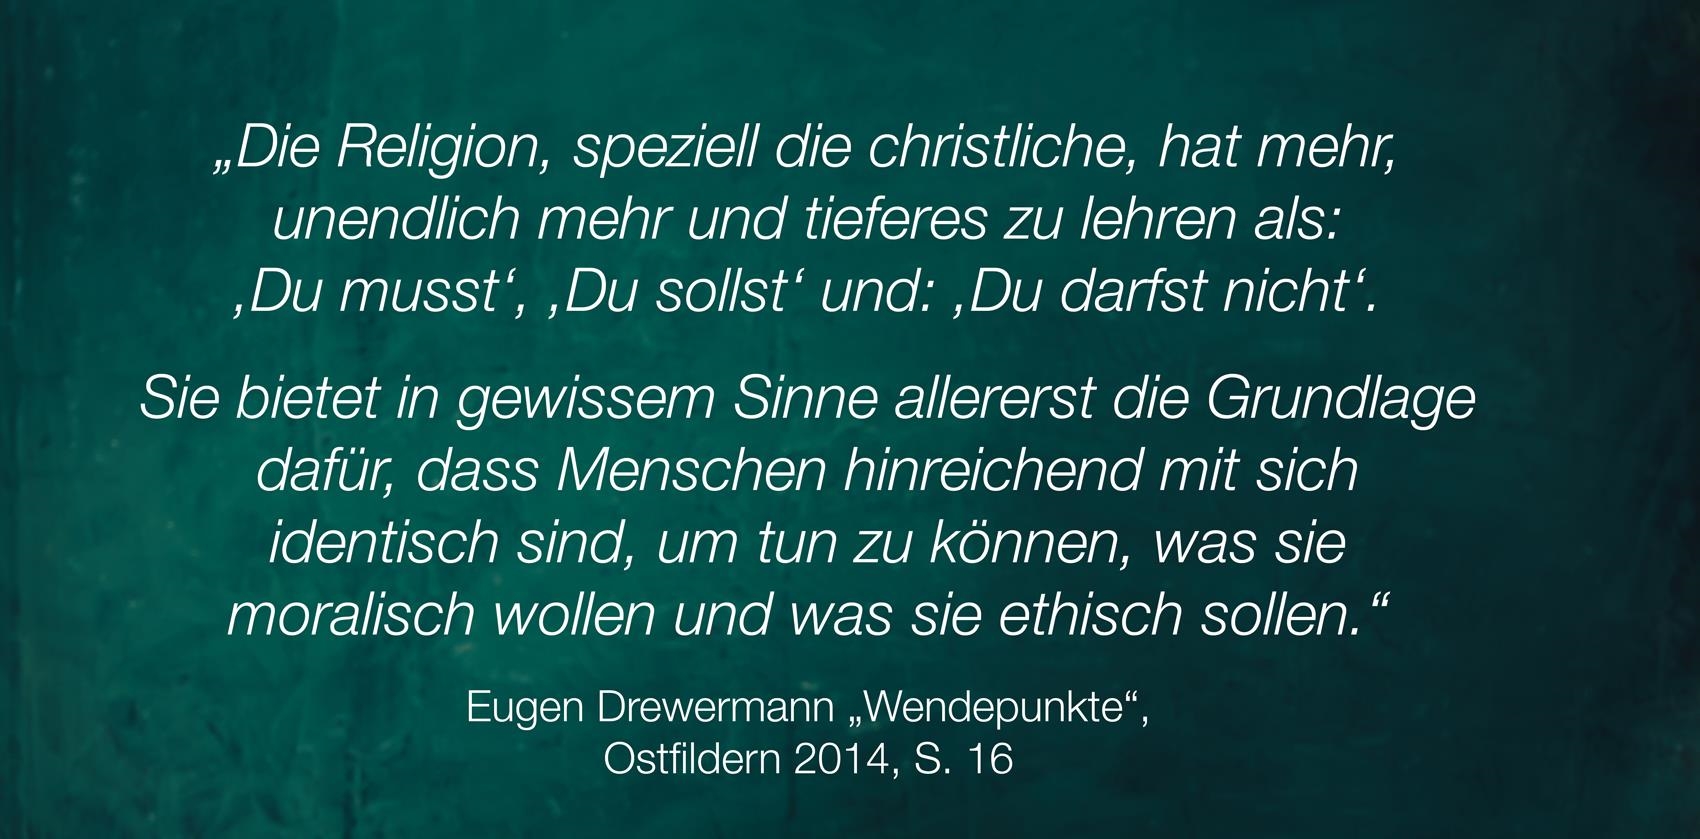 Zitat von Karl Rahner 